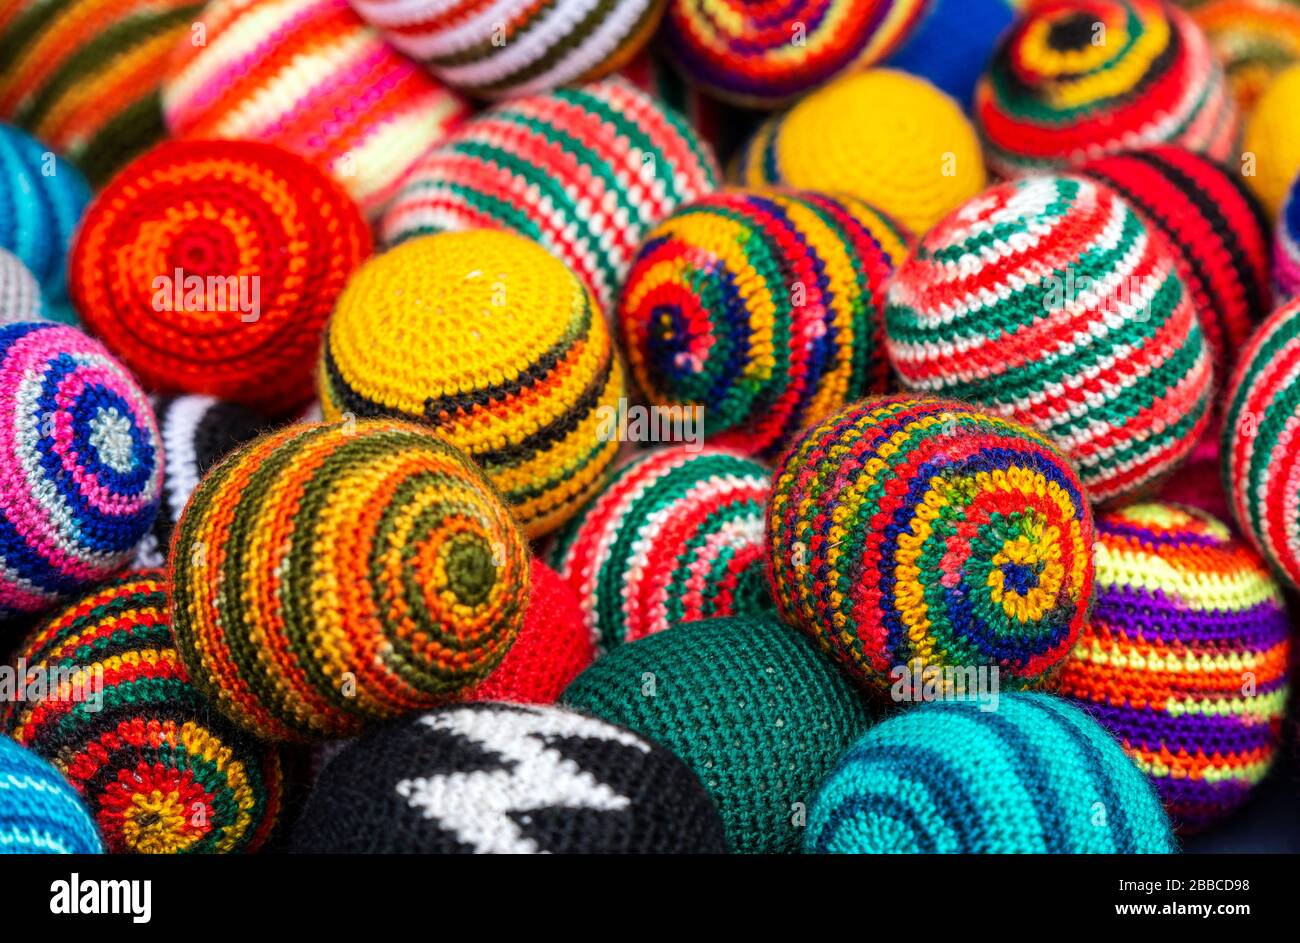 Vista lateral de coloridas bolas de lana en el mercado andino de Otavalo, al norte de Quito, Ecuador. Foto de stock